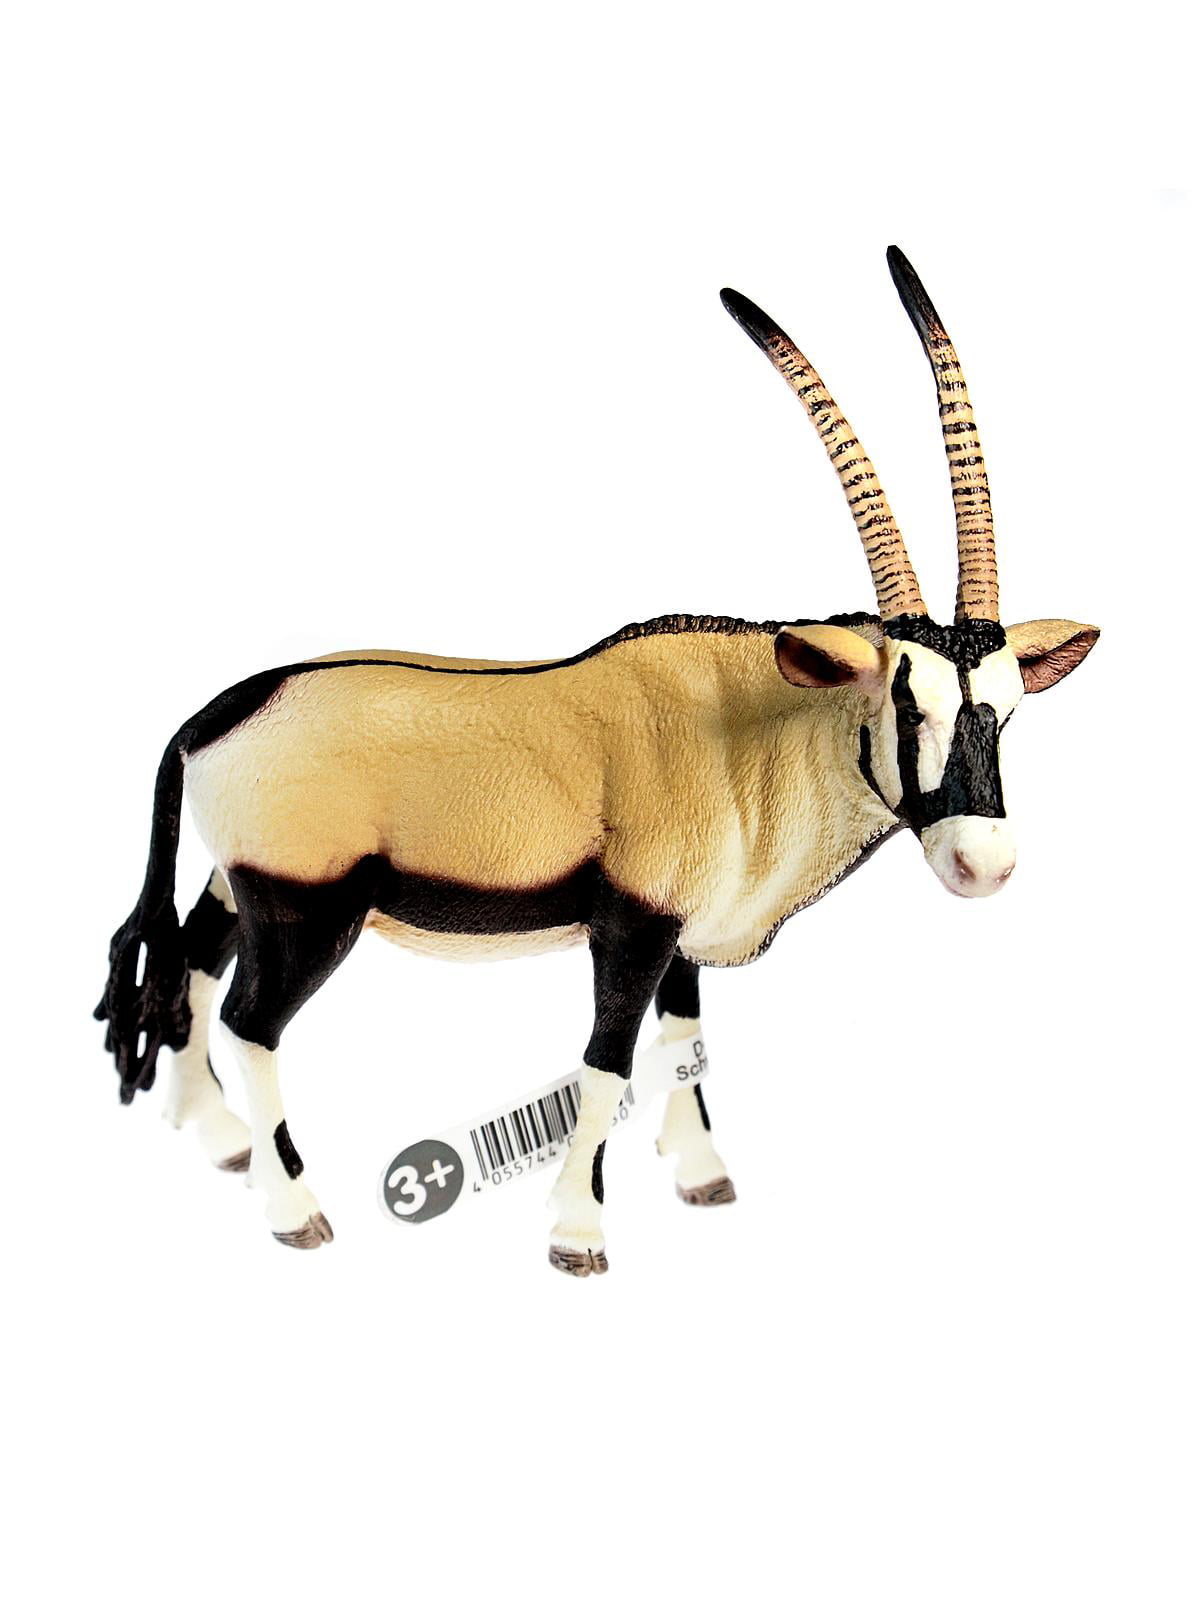 Details about   Home Décor 2 x Figurines Realistic Oryx Argali Animals Kids Educuational Toys 